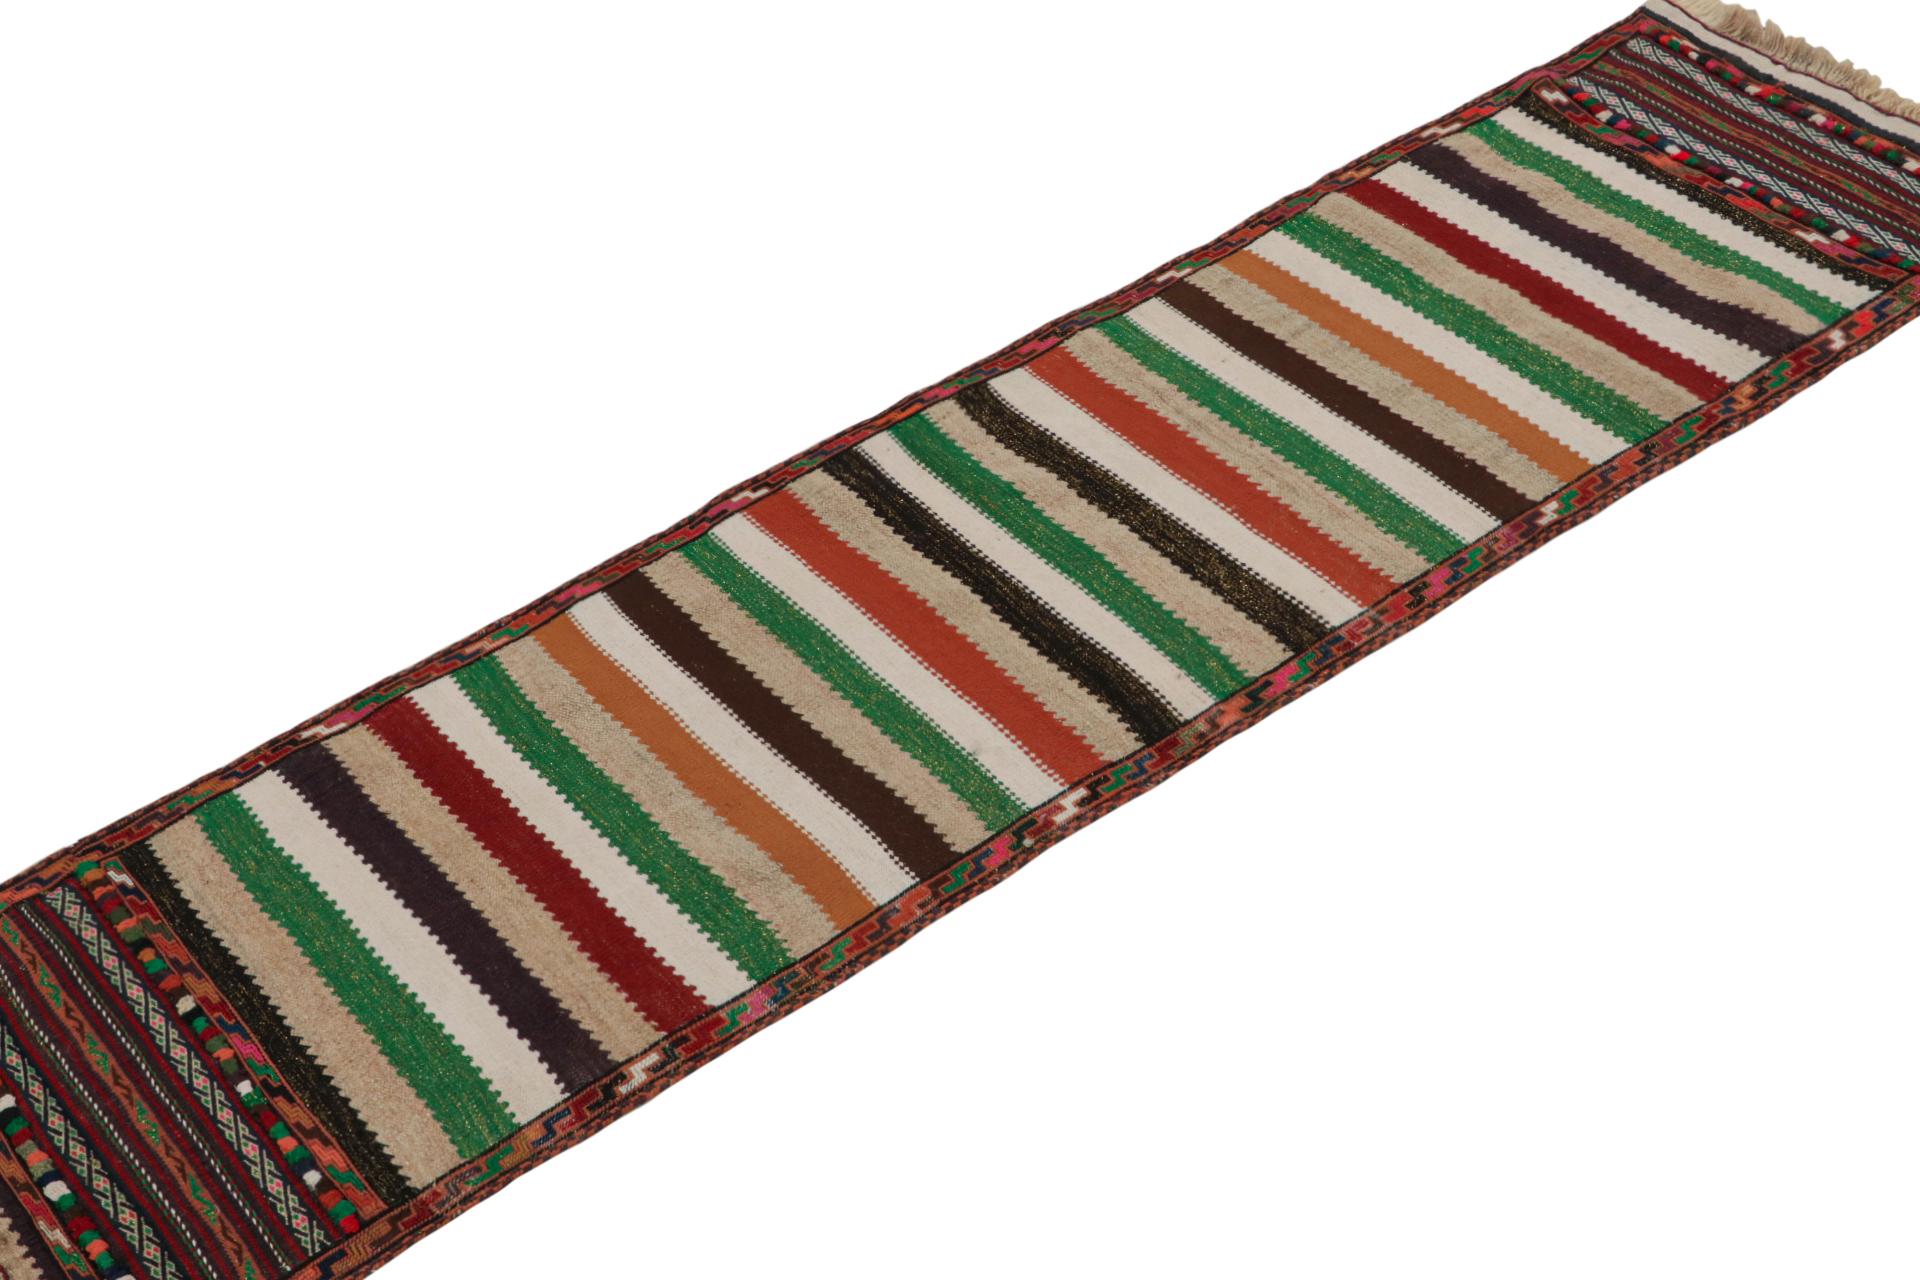 Dieser handgewebte afghanische 1x6 Stammes-Kilim aus Wolle (ca. 1950-1960) ist ein exquisites Stück aus dem Stammesleben, das im Nomadenalltag oft als Tischdecke verwendet wurde, ähnlich wie die persischen Sofreh-Kilims. 

Über das Design: